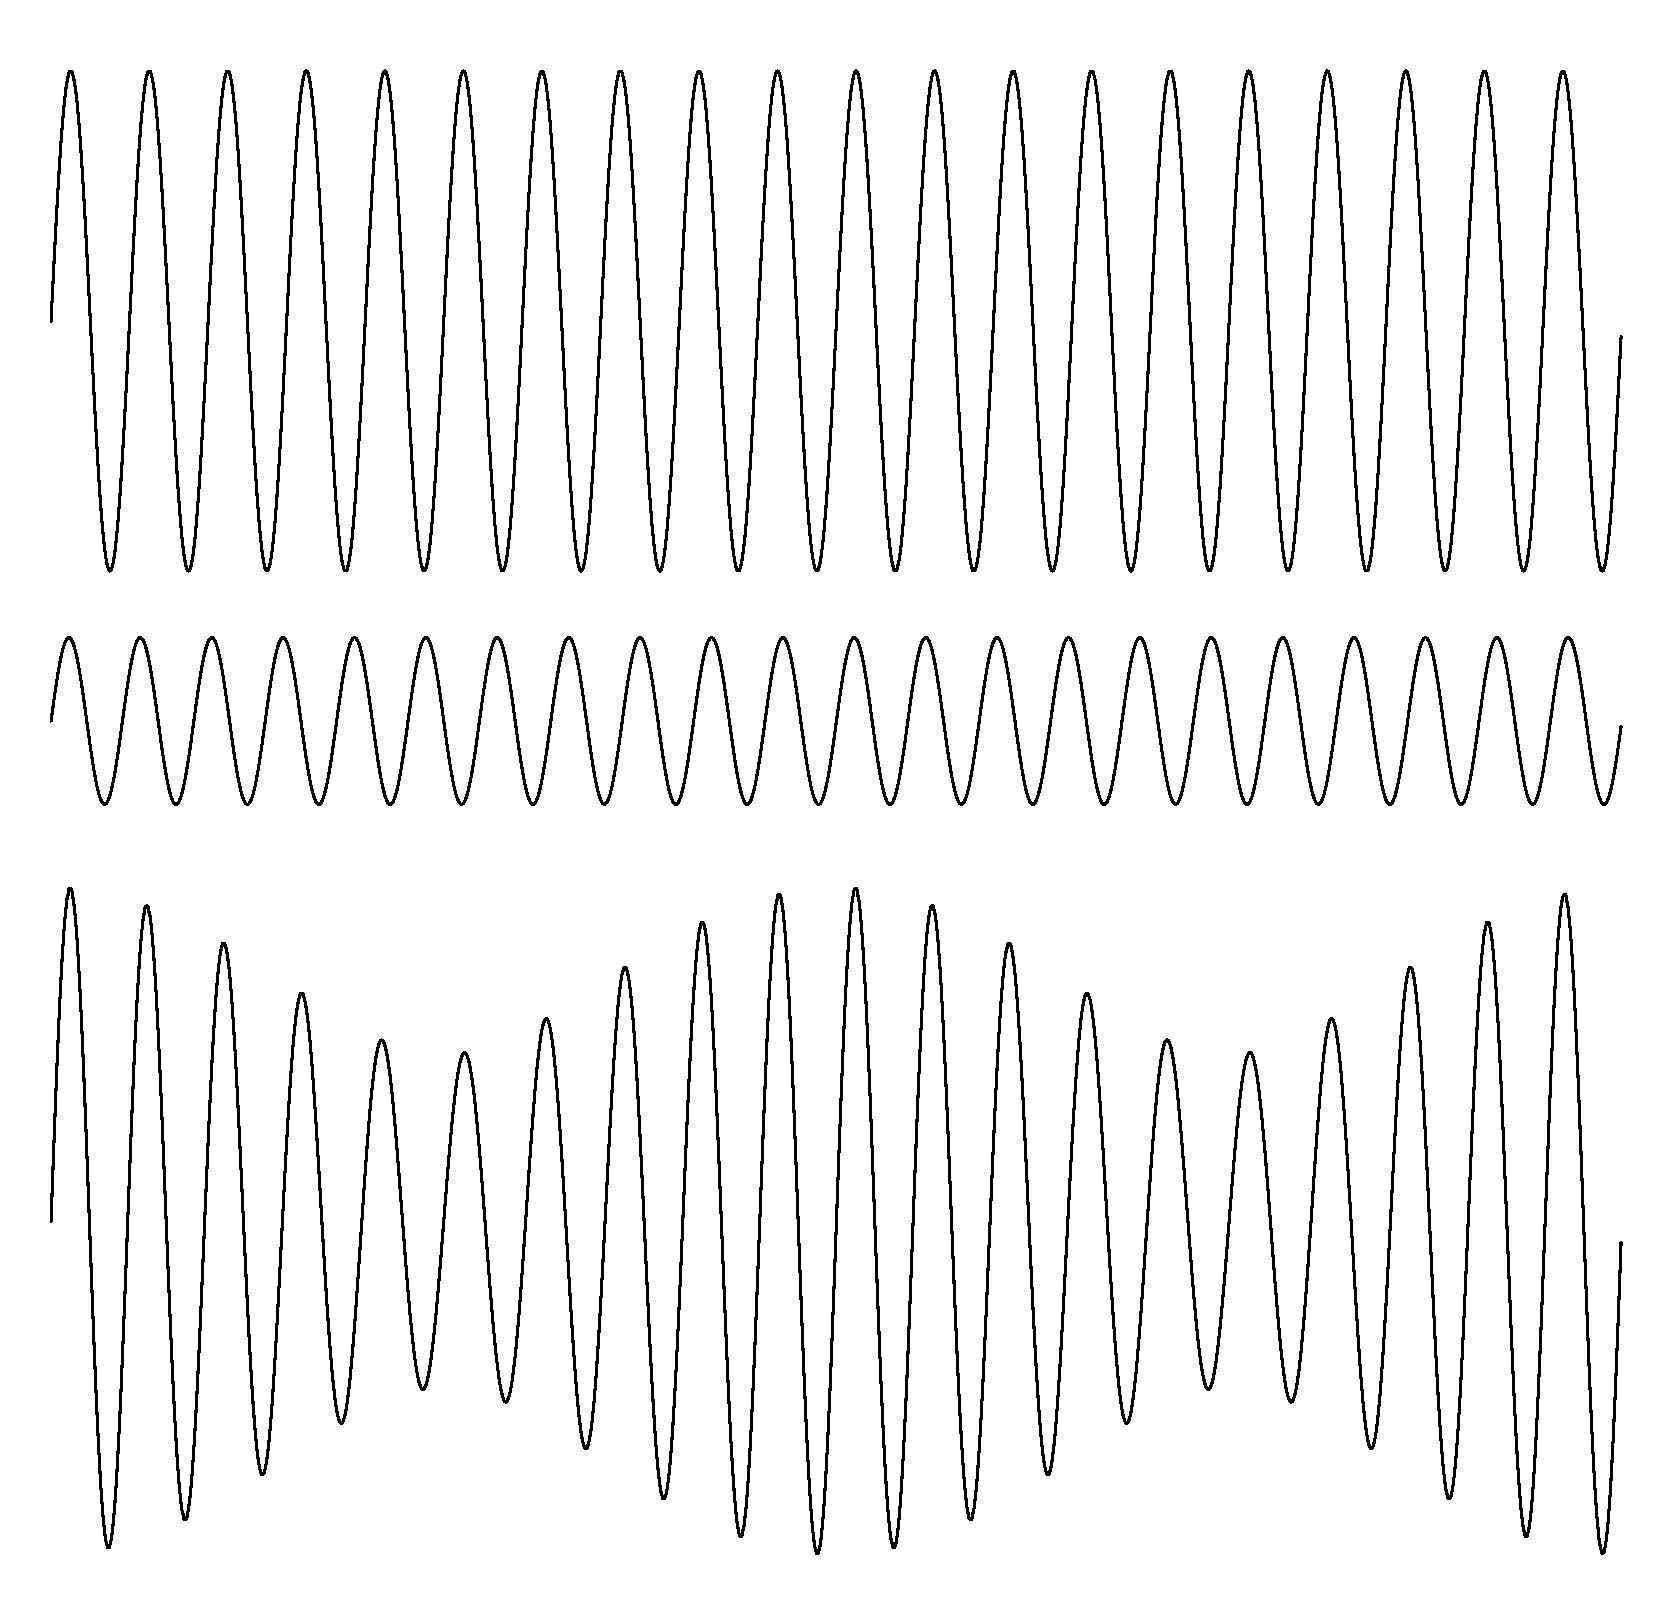 représentation des battements pour des signaux d'amplitudes différentes